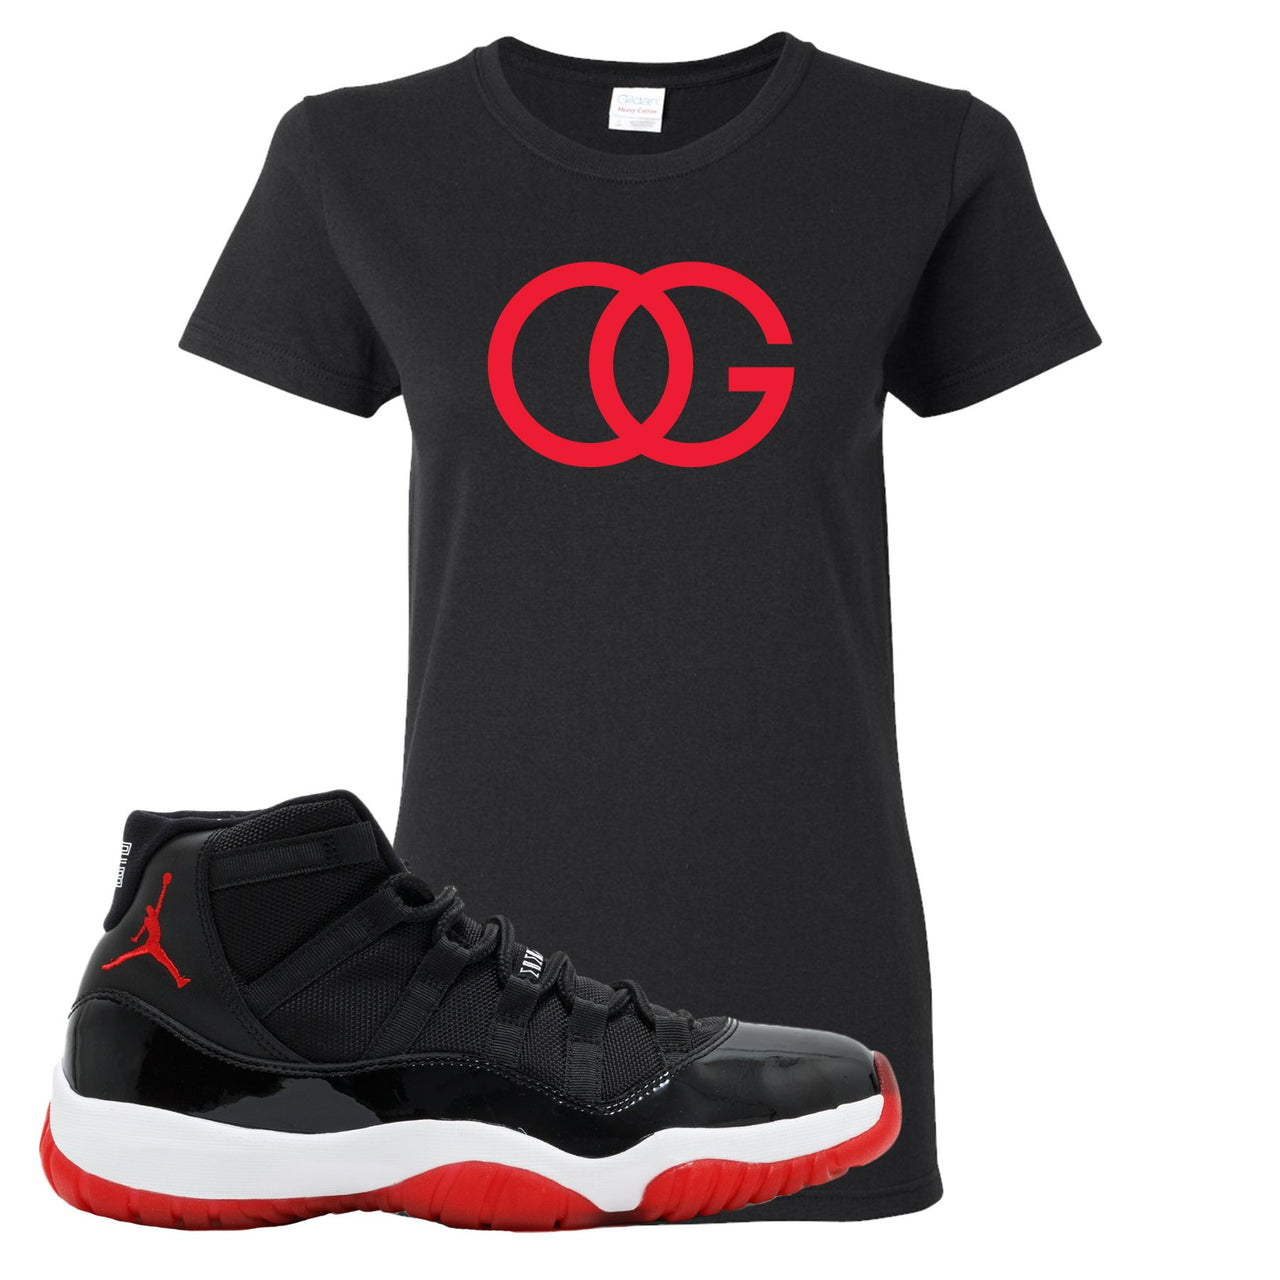 Jordan 11 Bred OG Black Sneaker Hook Up Women's T-Shirt